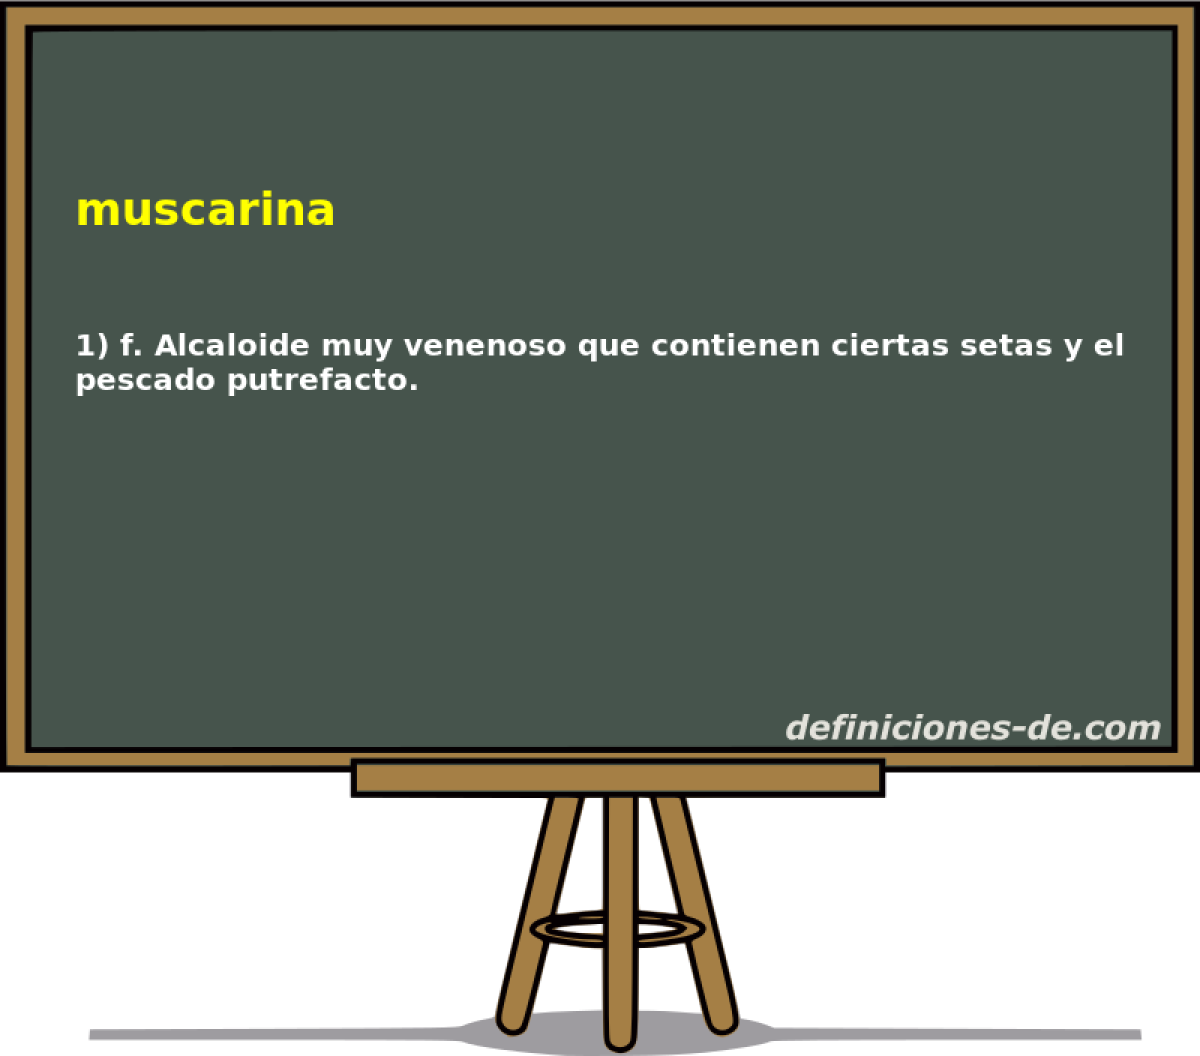 muscarina 